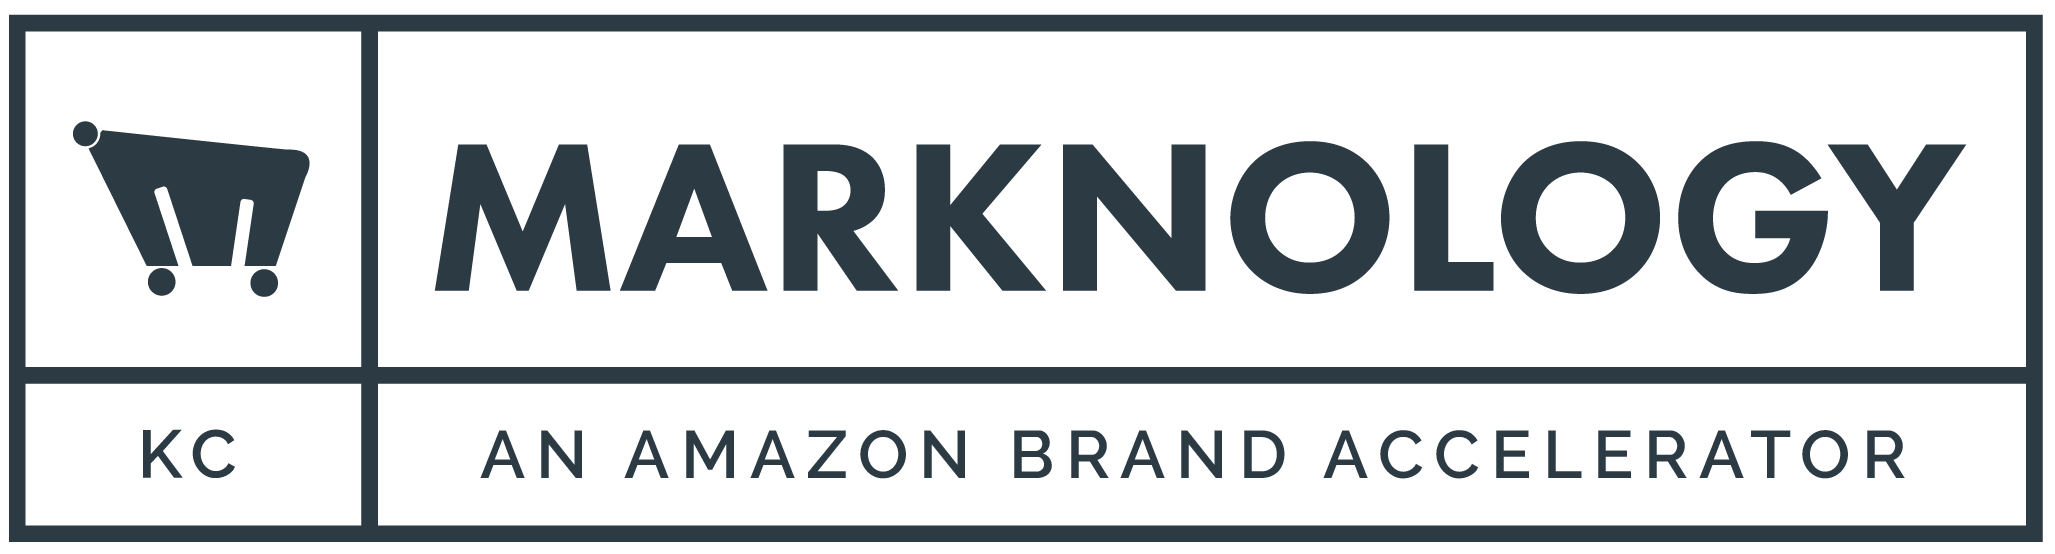 marknology-logo